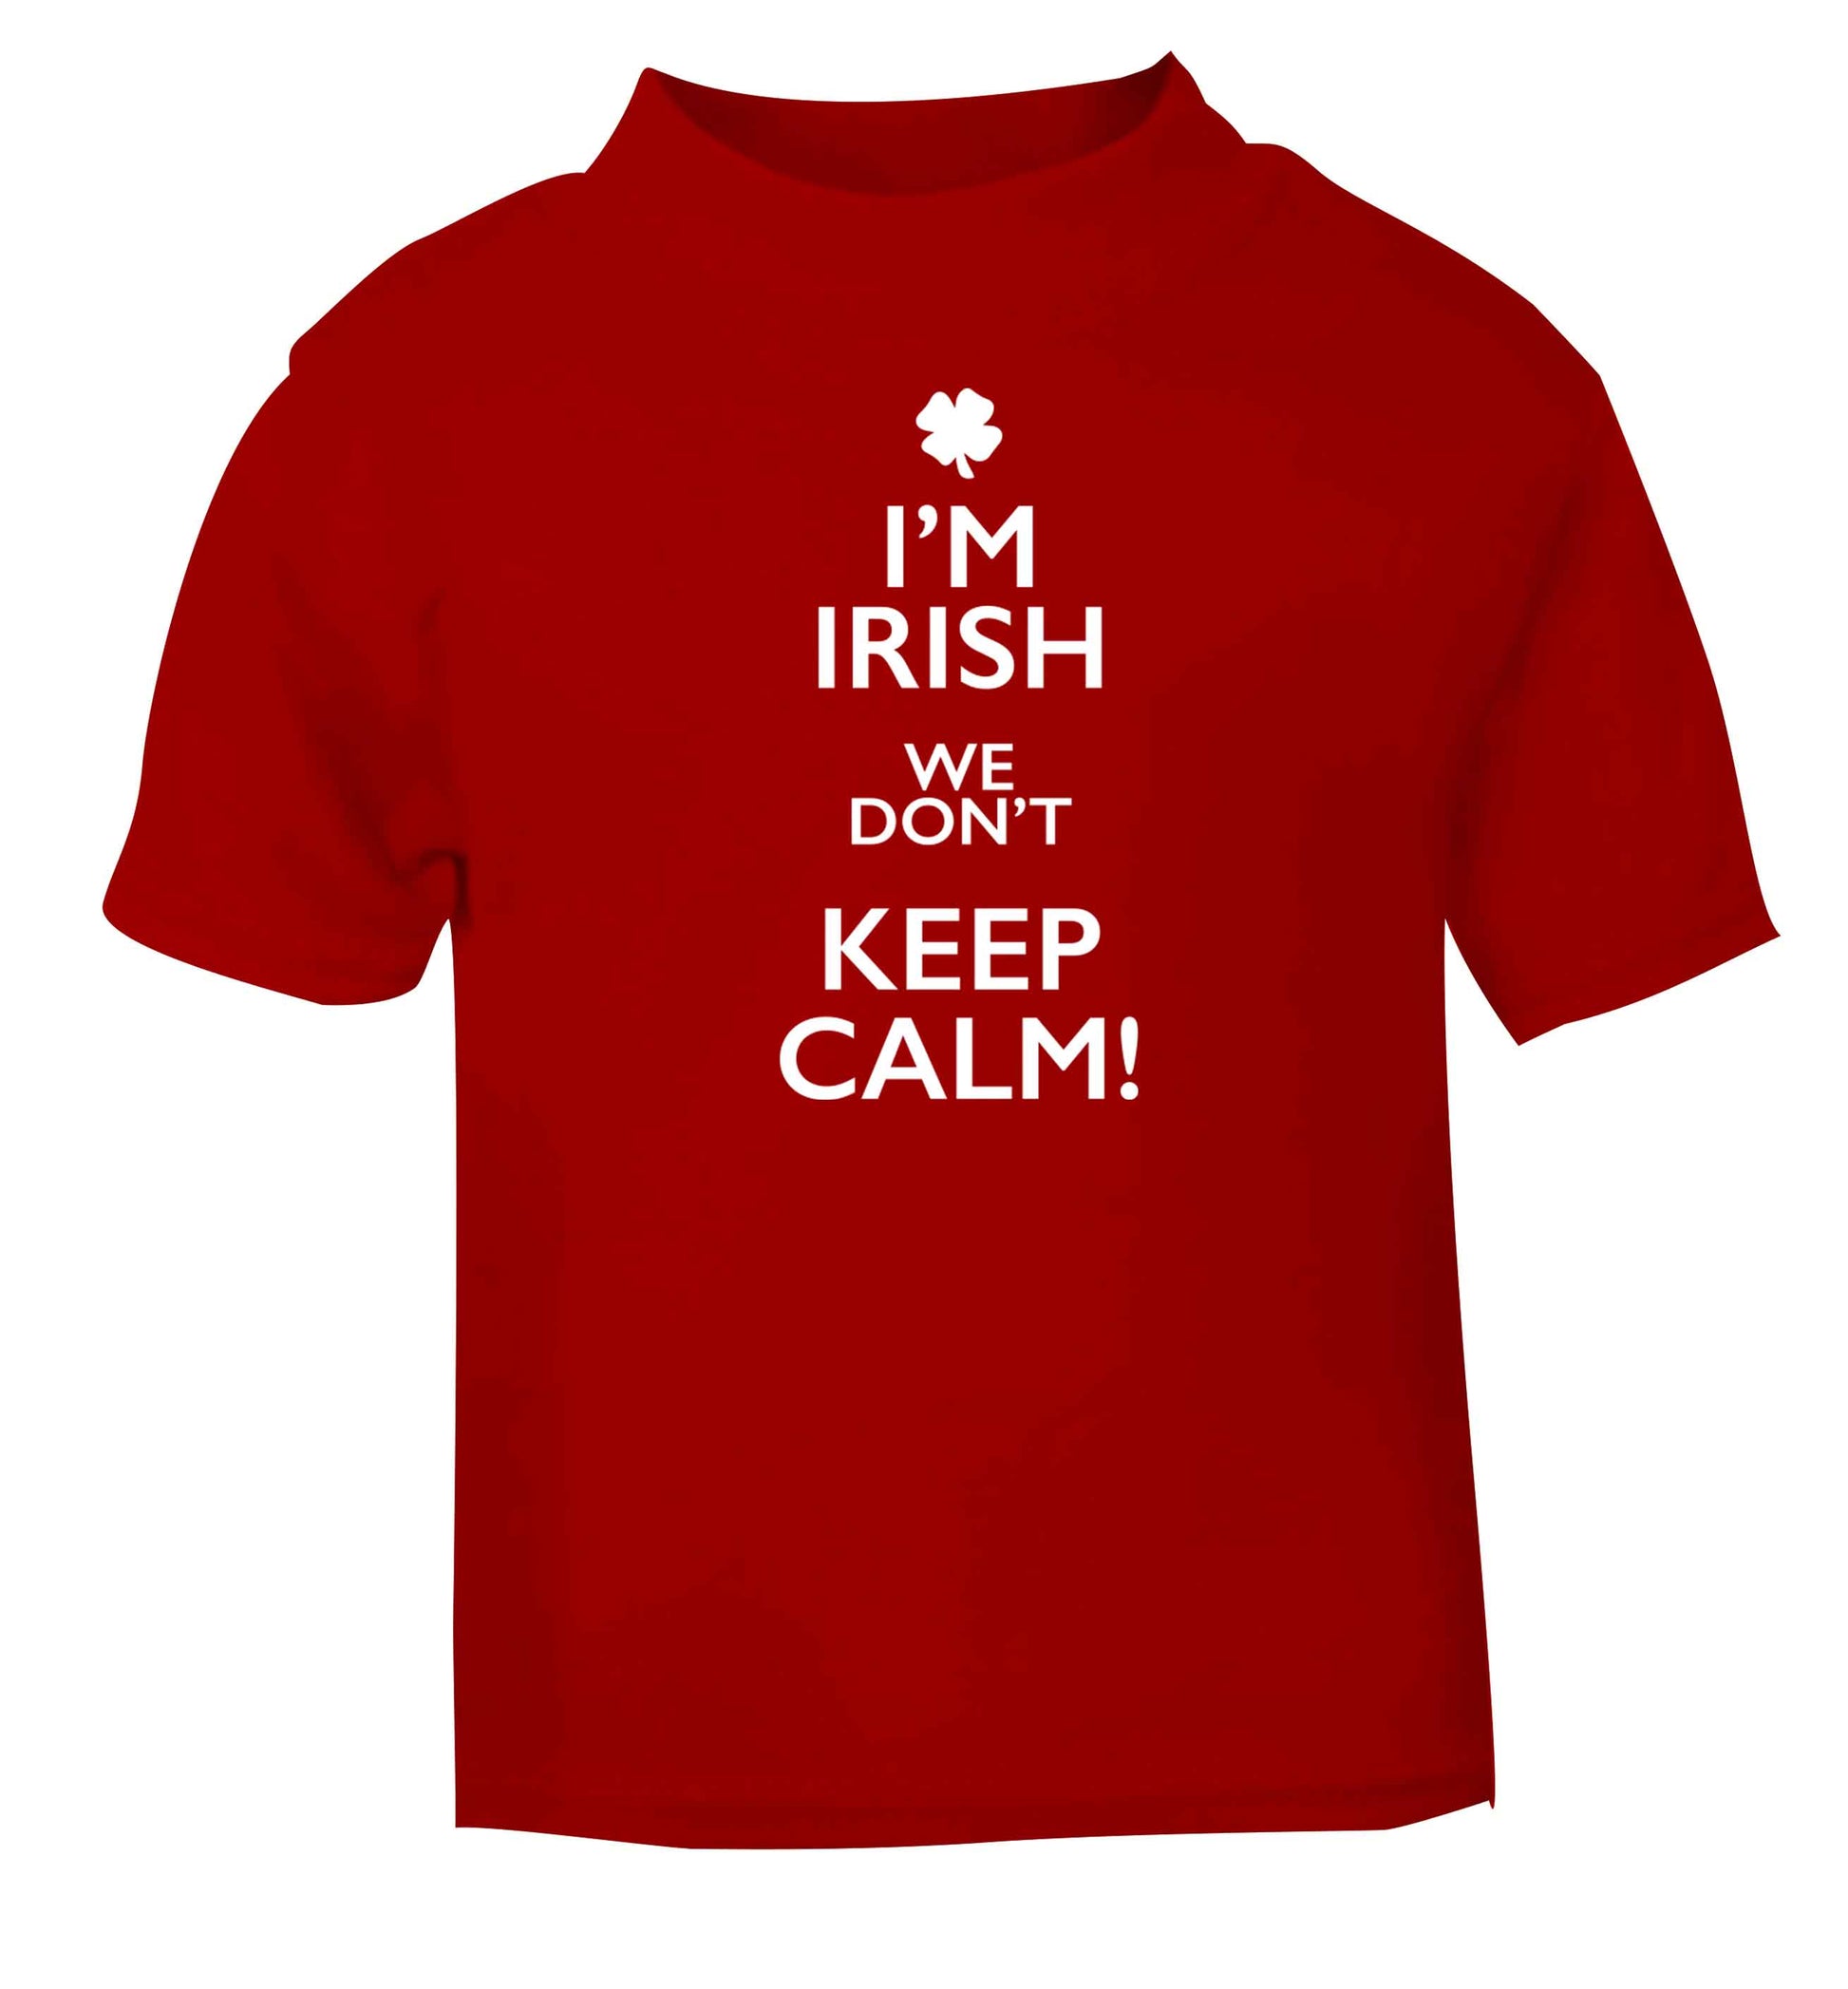 I'm Irish we don't keep calm red baby toddler Tshirt 2 Years